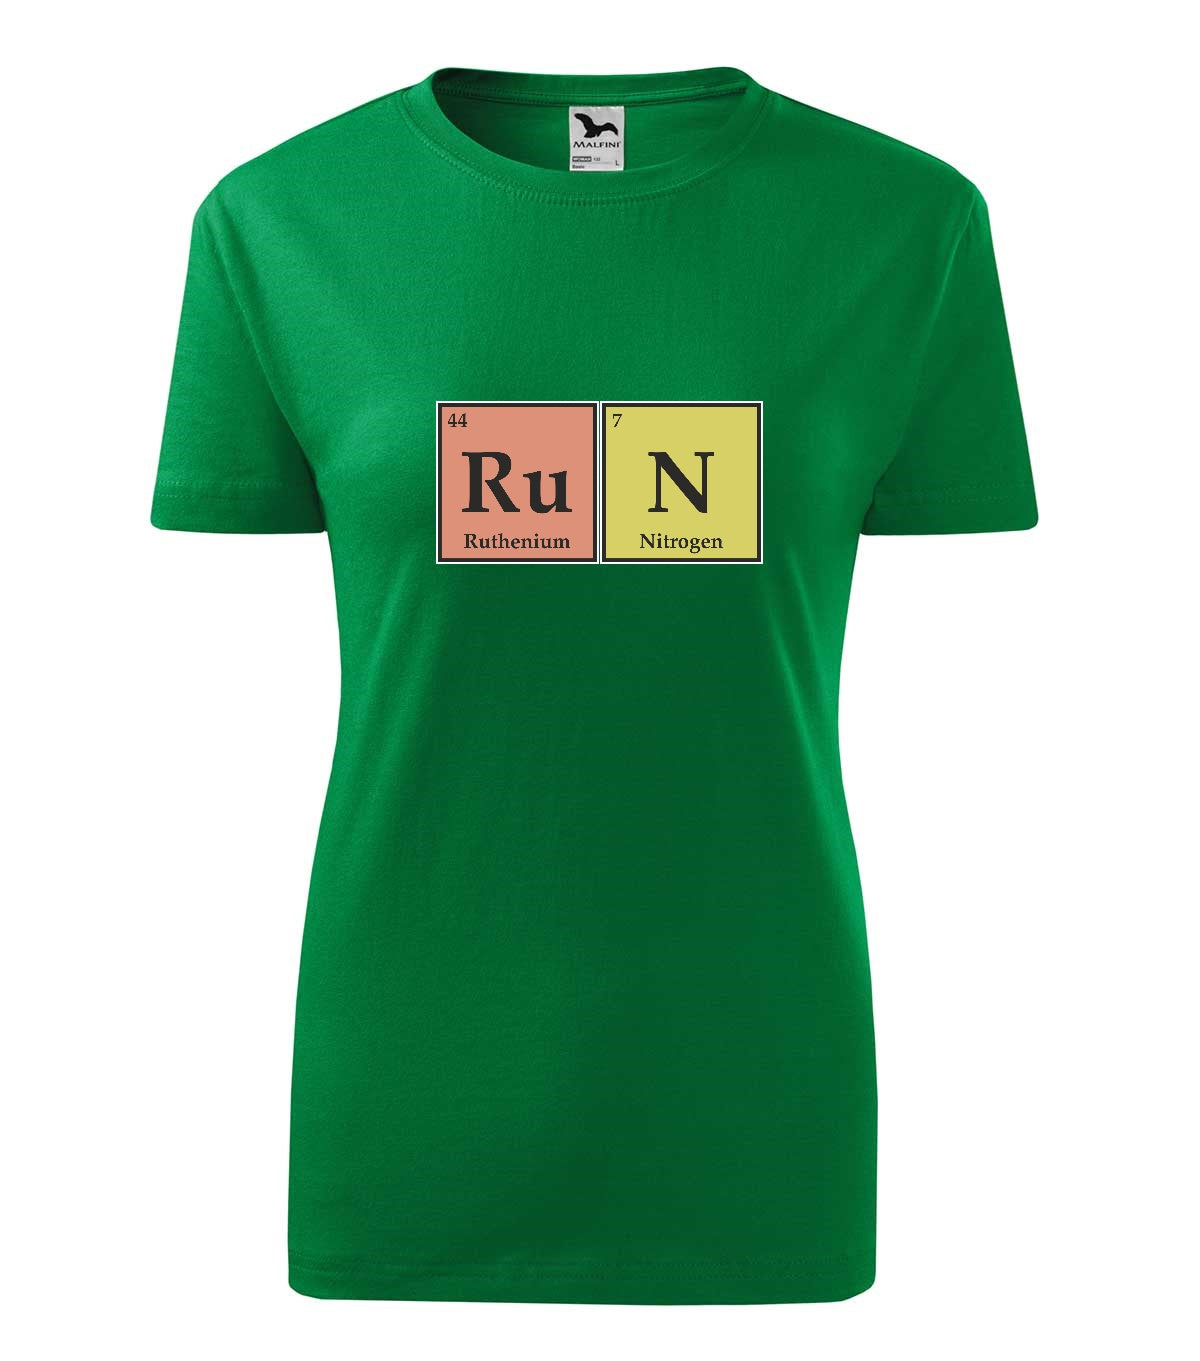 RuN kémia női technikai póló